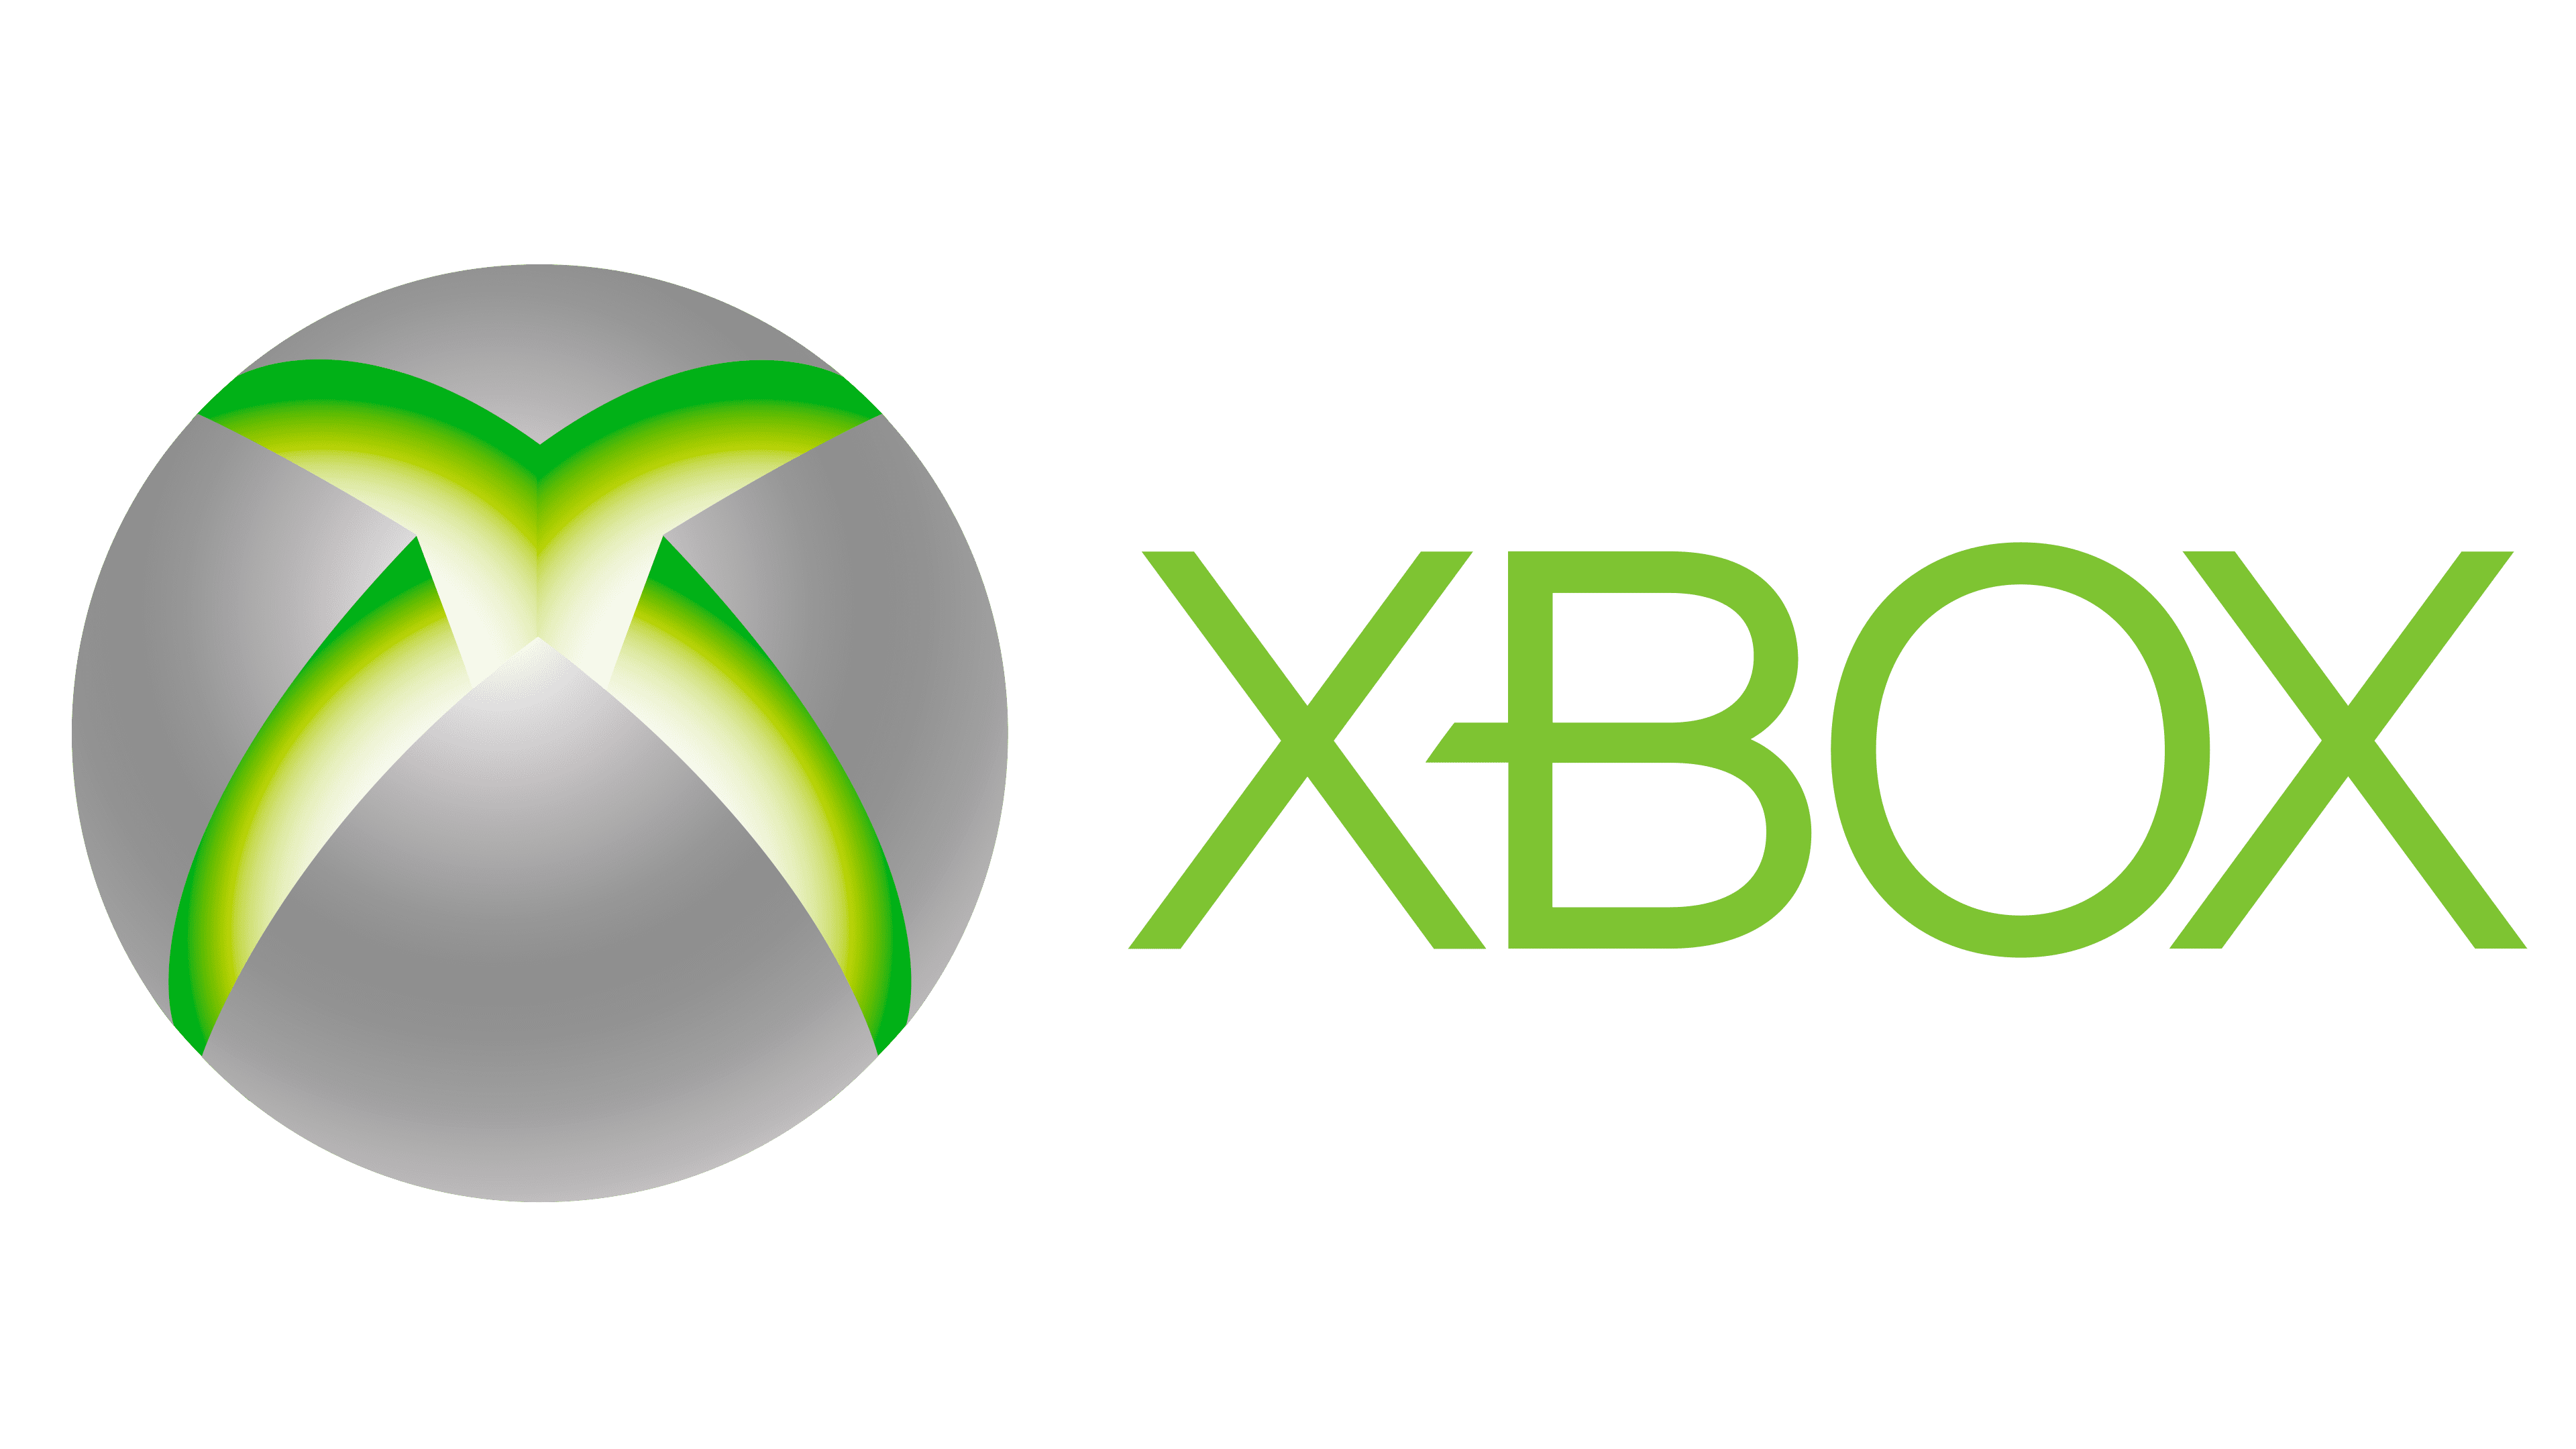 Xbox company. Логотип хбокс 360. Xbox 2001 logo. Xbox 360 logo 2010. Xbox logo 1x1.